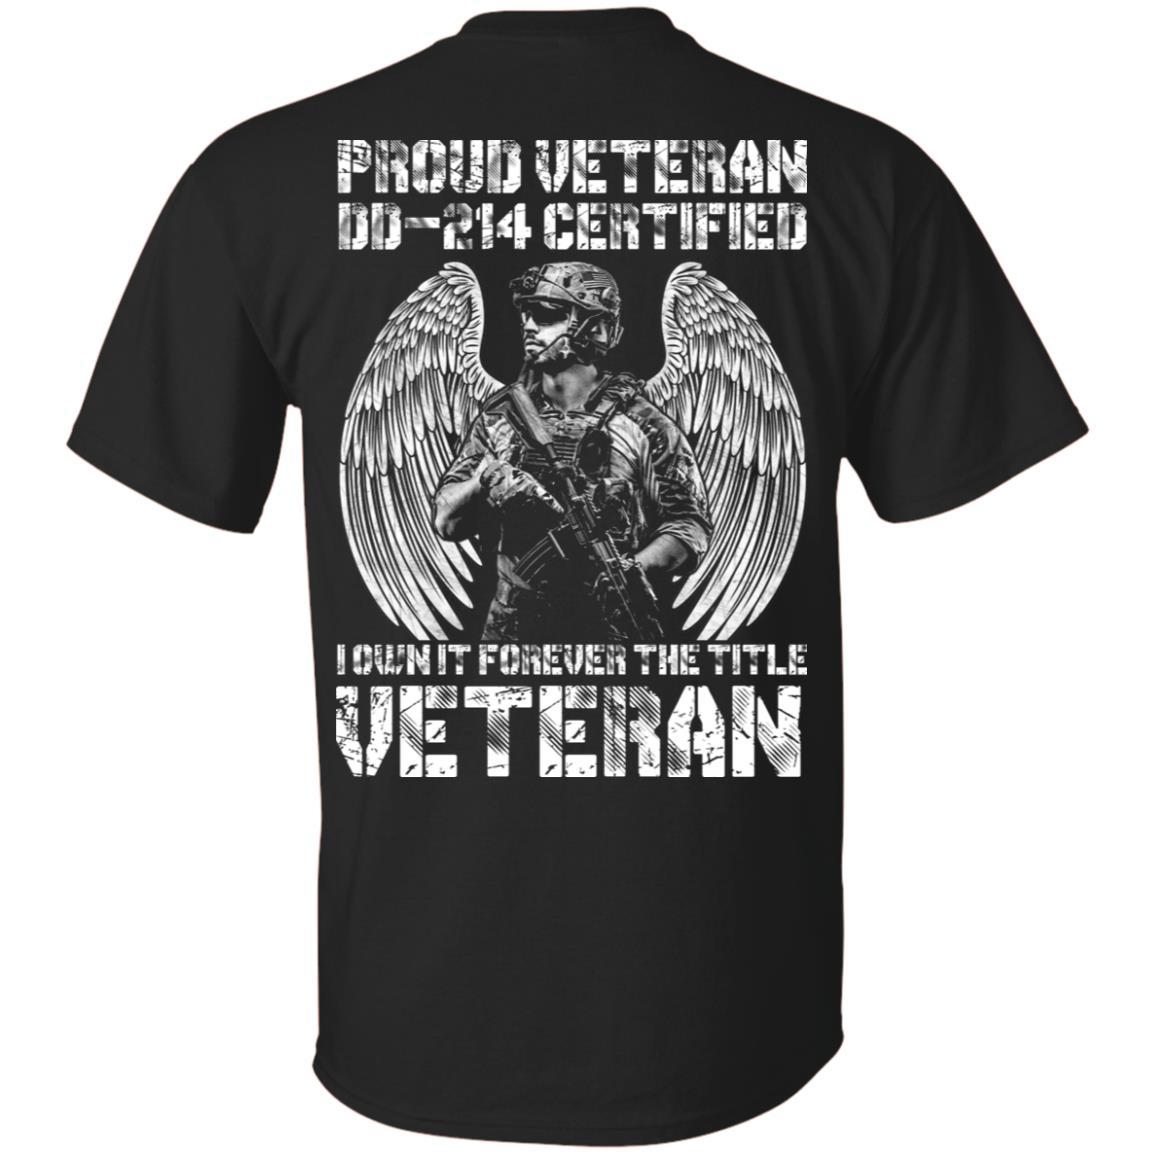 Military T-Shirt "Proud Veteran DD-214 I Own It Forever Men" On Back-TShirt-General-Veterans Nation